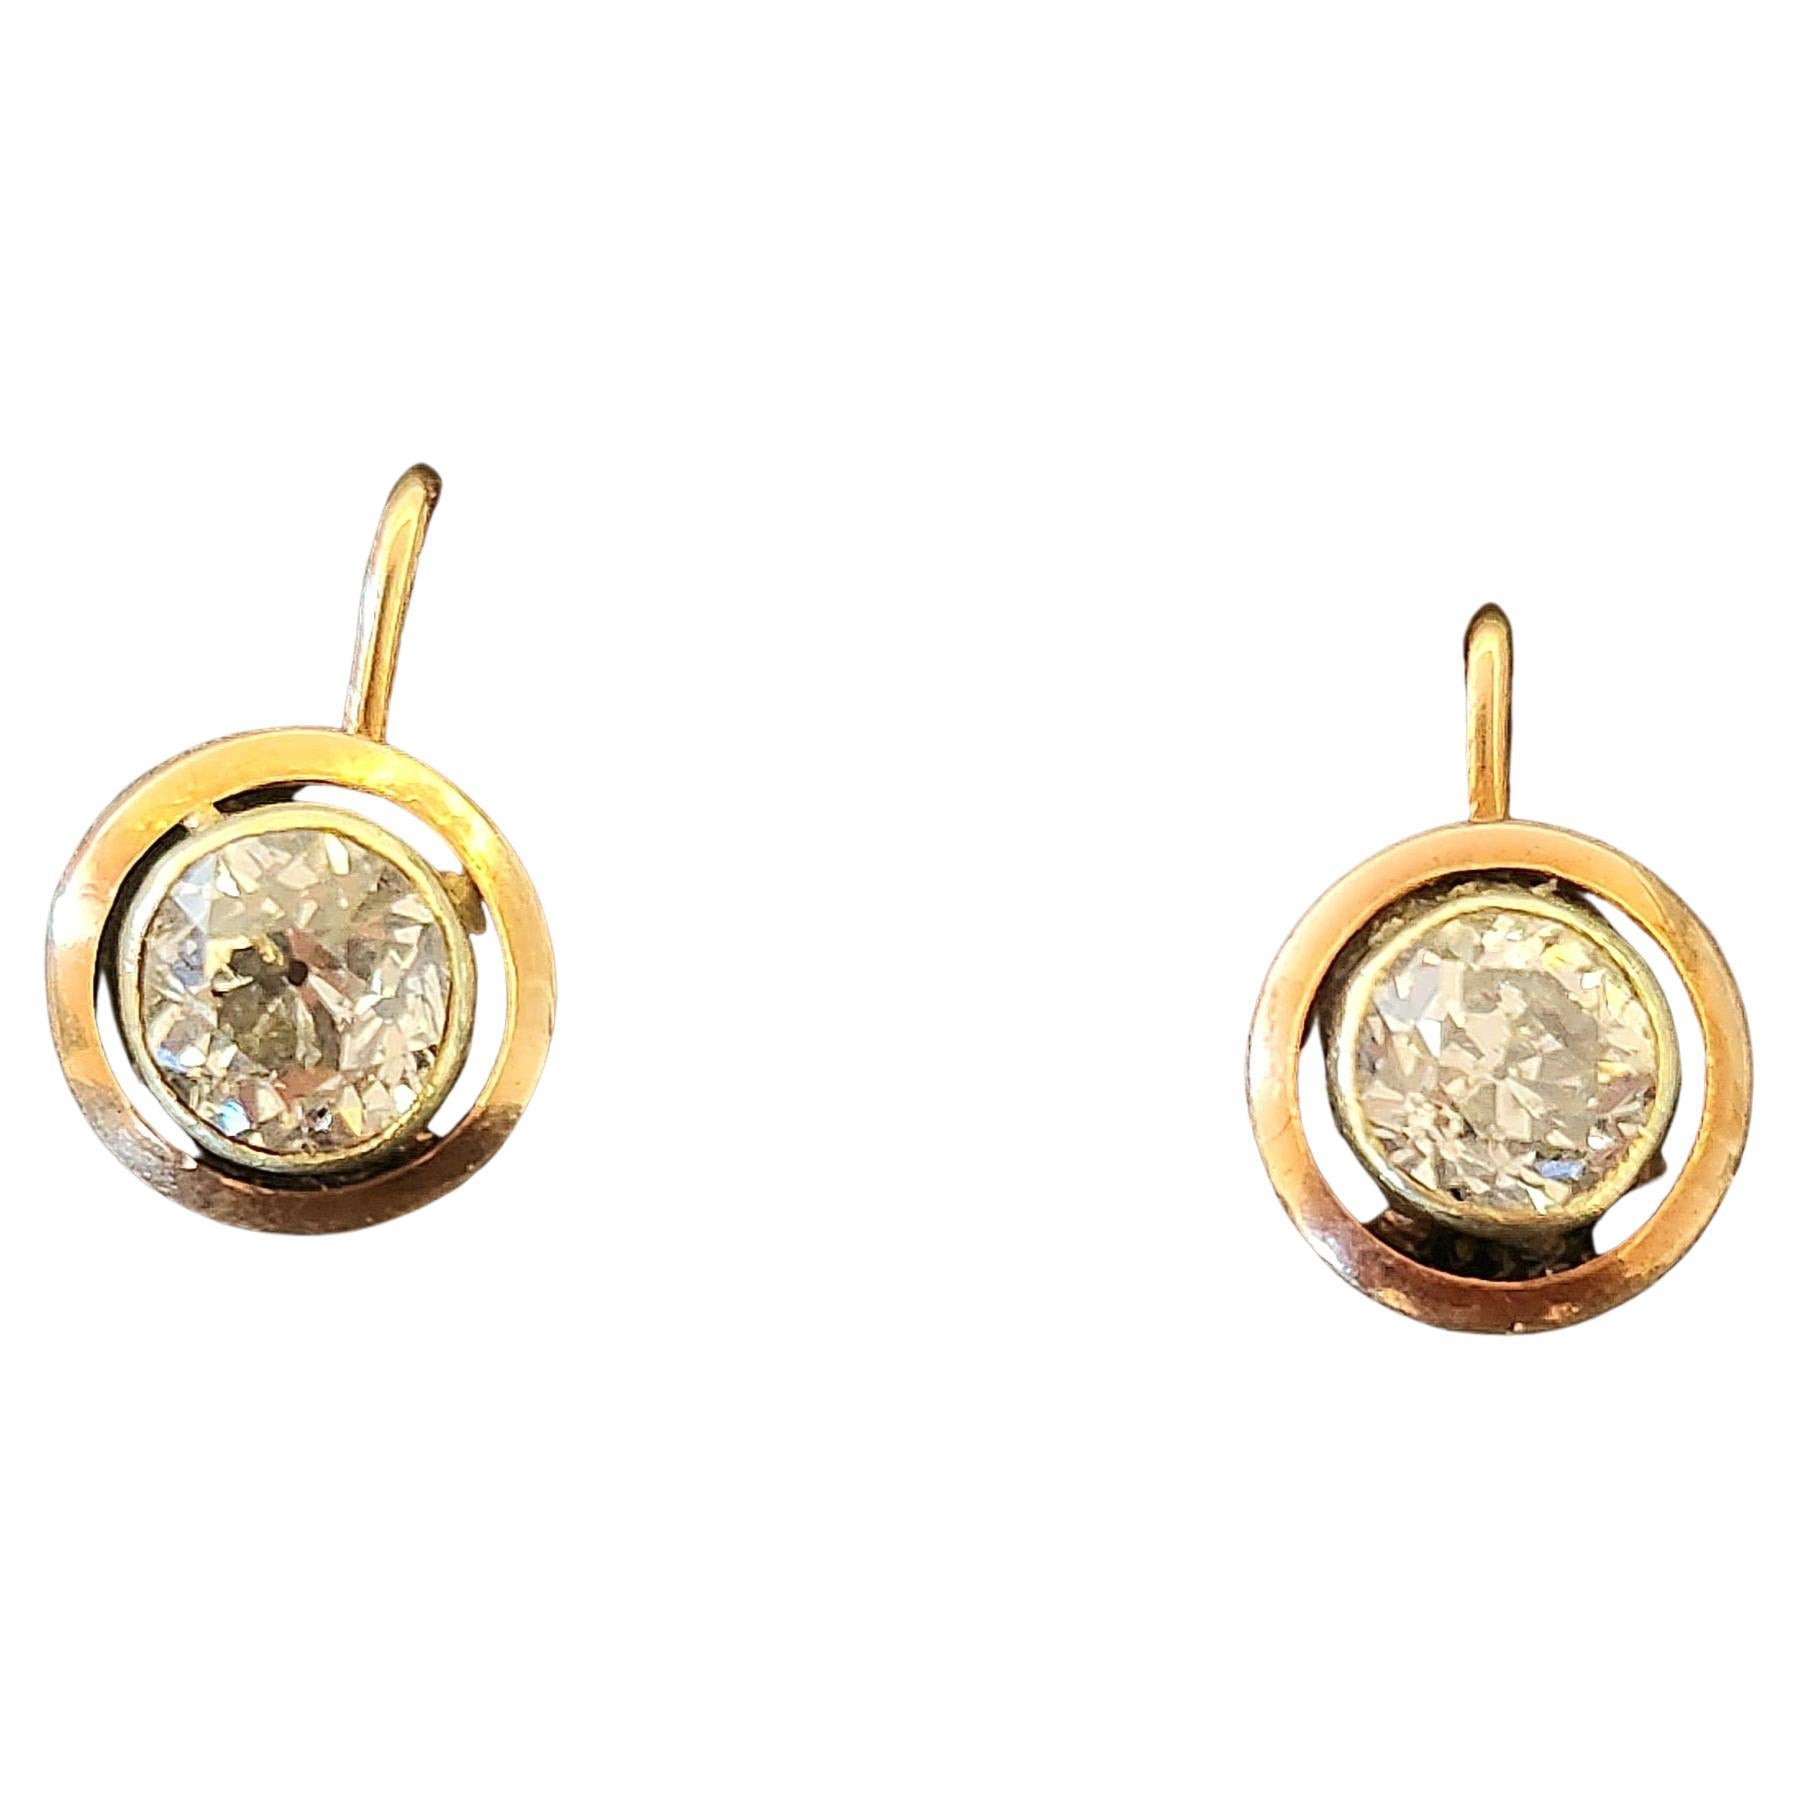 Antike russische Ohrringe mit Diamanten im Minenschliff mit einem geschätzten Gesamtgewicht von 1,60 Karat in der Farbe Weiß, jeder Stein hat einen Durchmesser von 6 mm und ein Gewicht von 0,80 Karat in 14-karätigem Roségold. Die Ohrringe sind 1,5